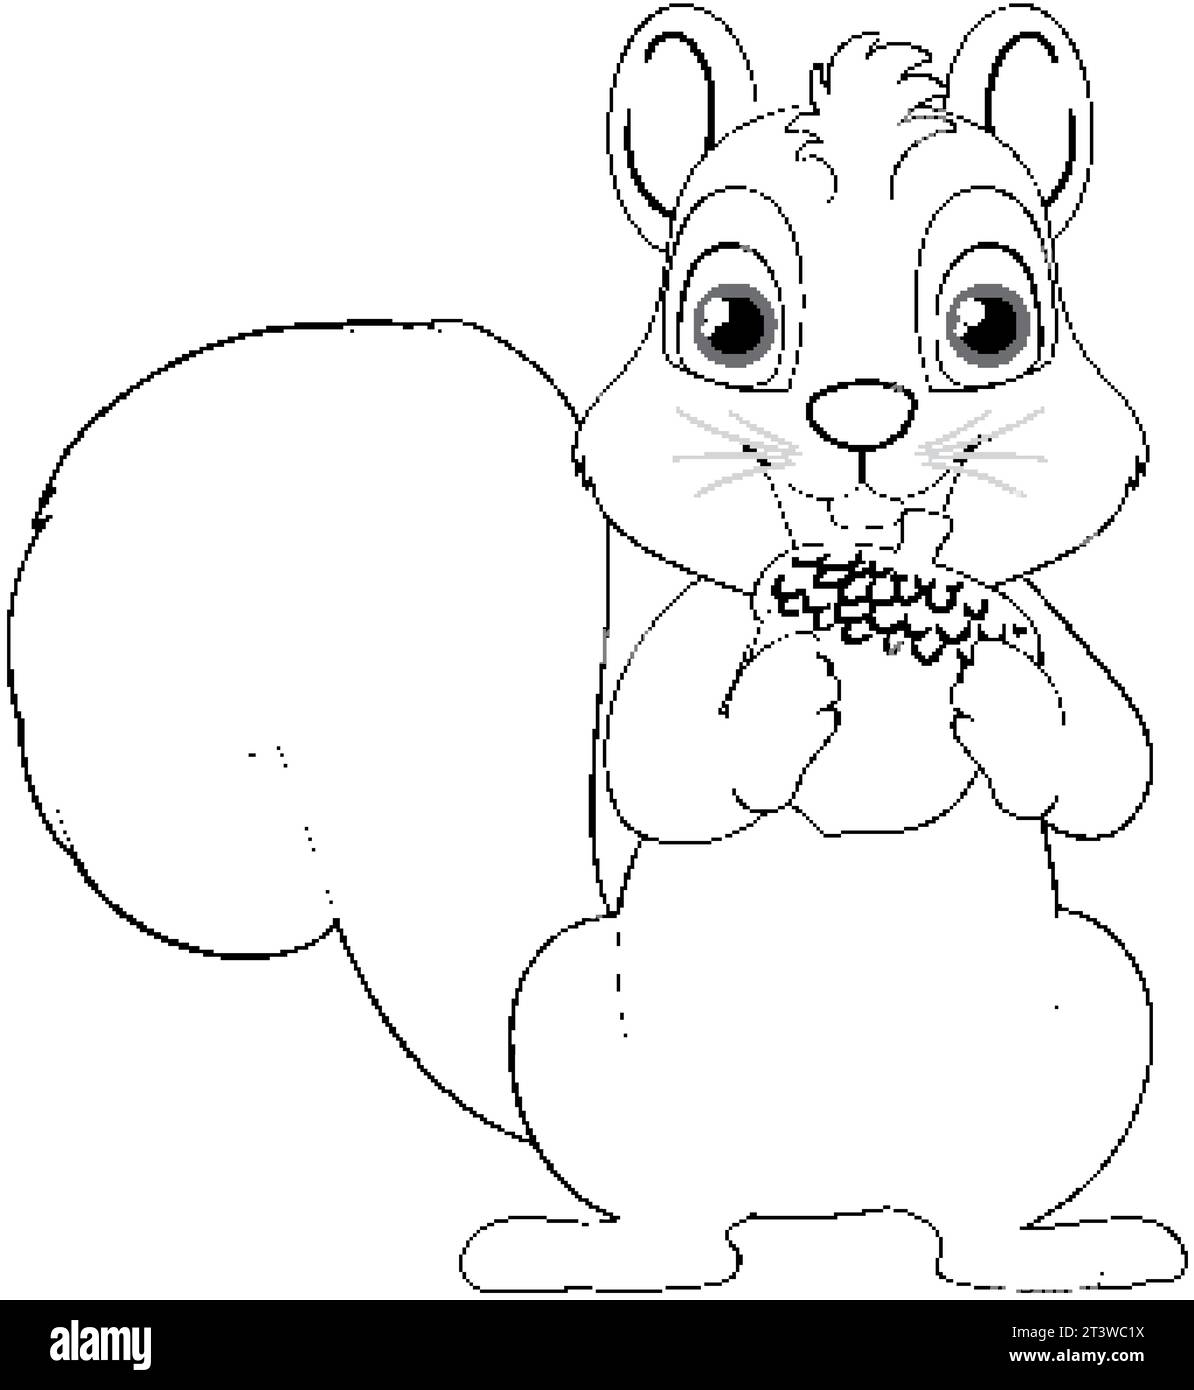 Un cartone animato raffigurante uno scoiattolo sorridente che regge una ghianda, isolato su uno sfondo bianco Illustrazione Vettoriale